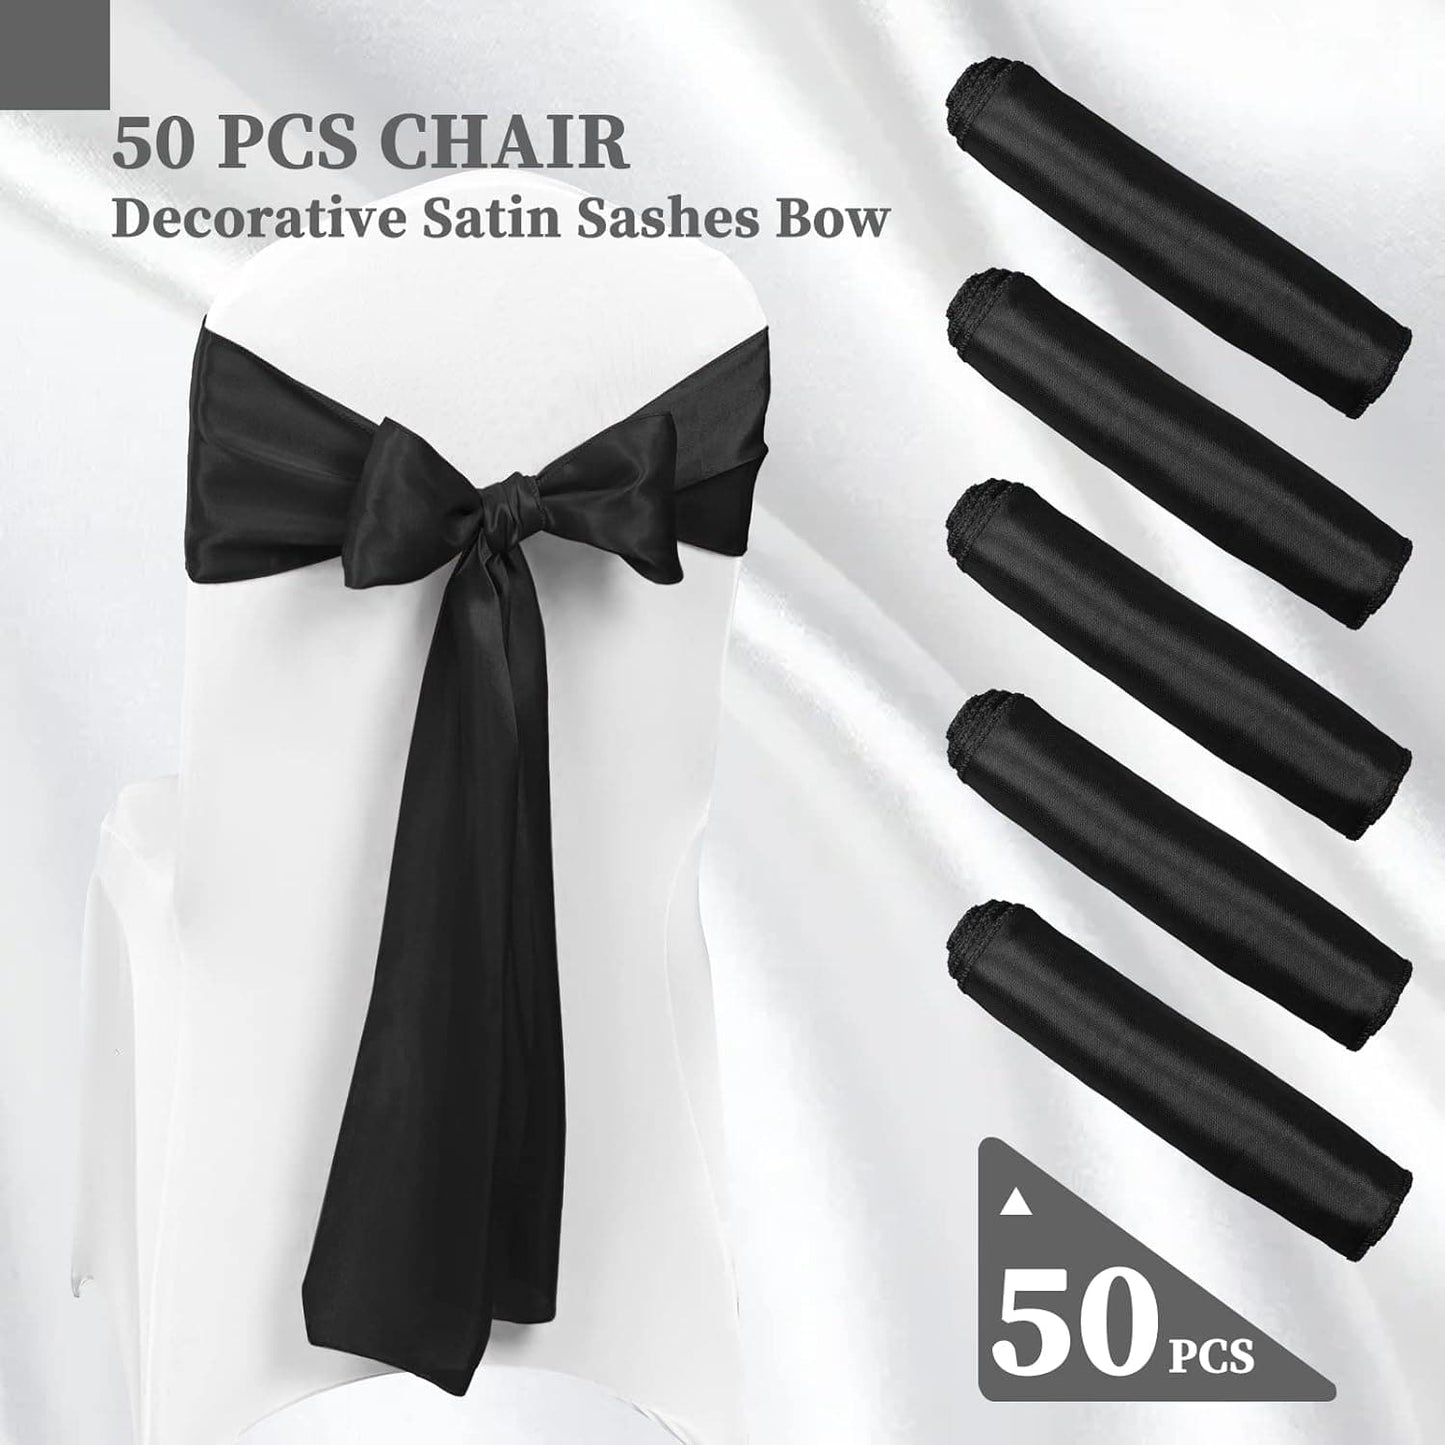 50 PCS Satin Chair Decorative Sash